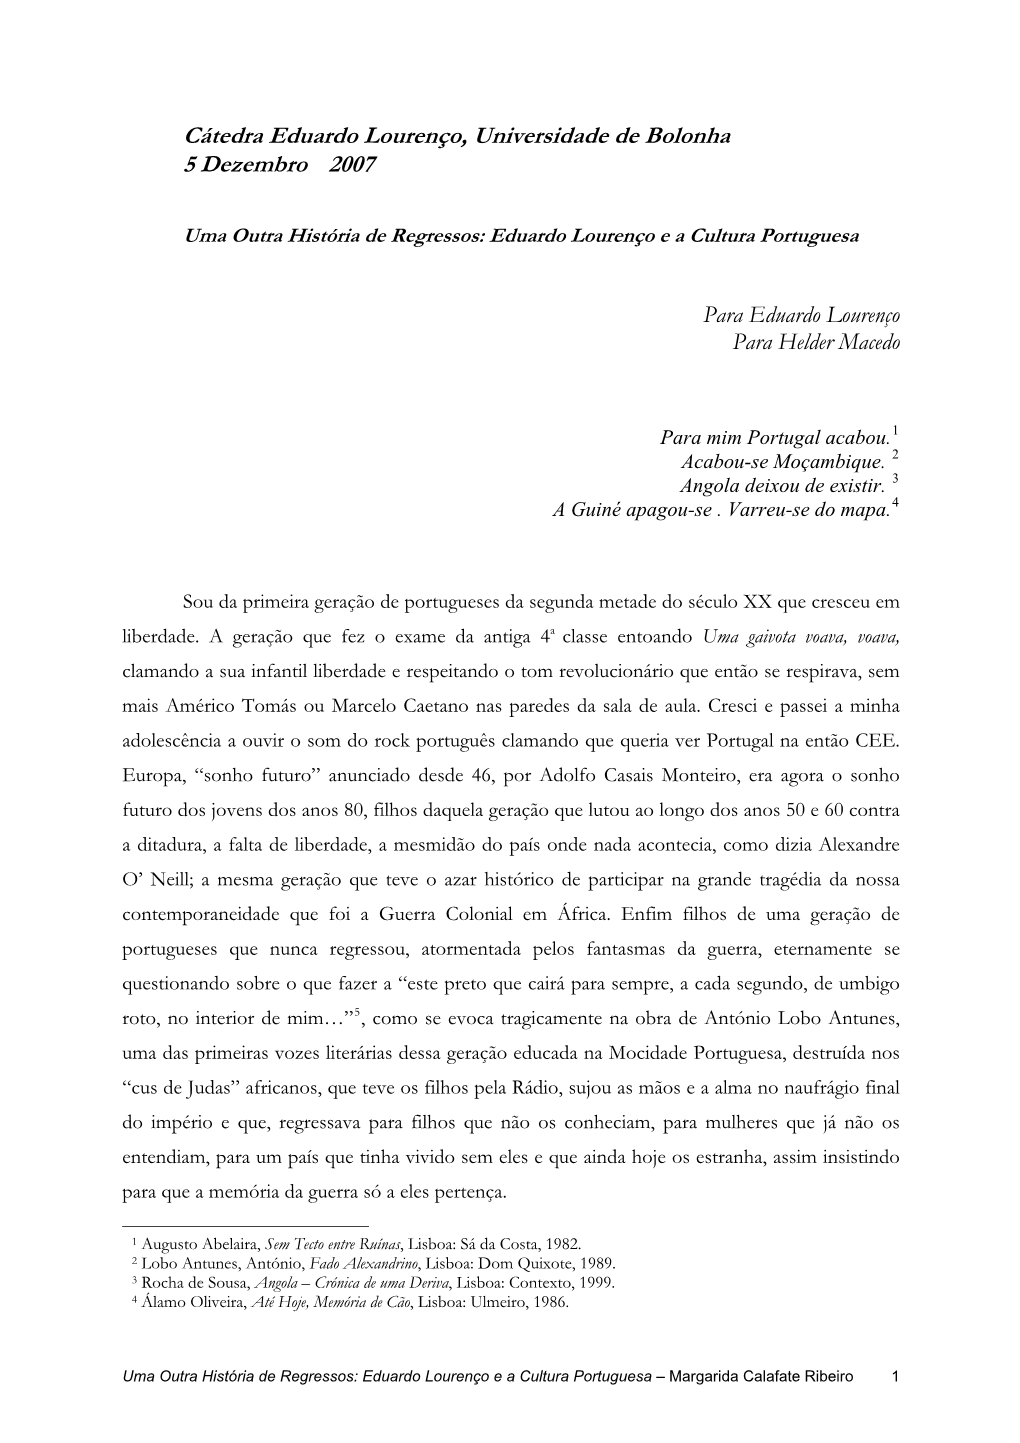 Eduardo Lourenço E a Cultura Portuguesa